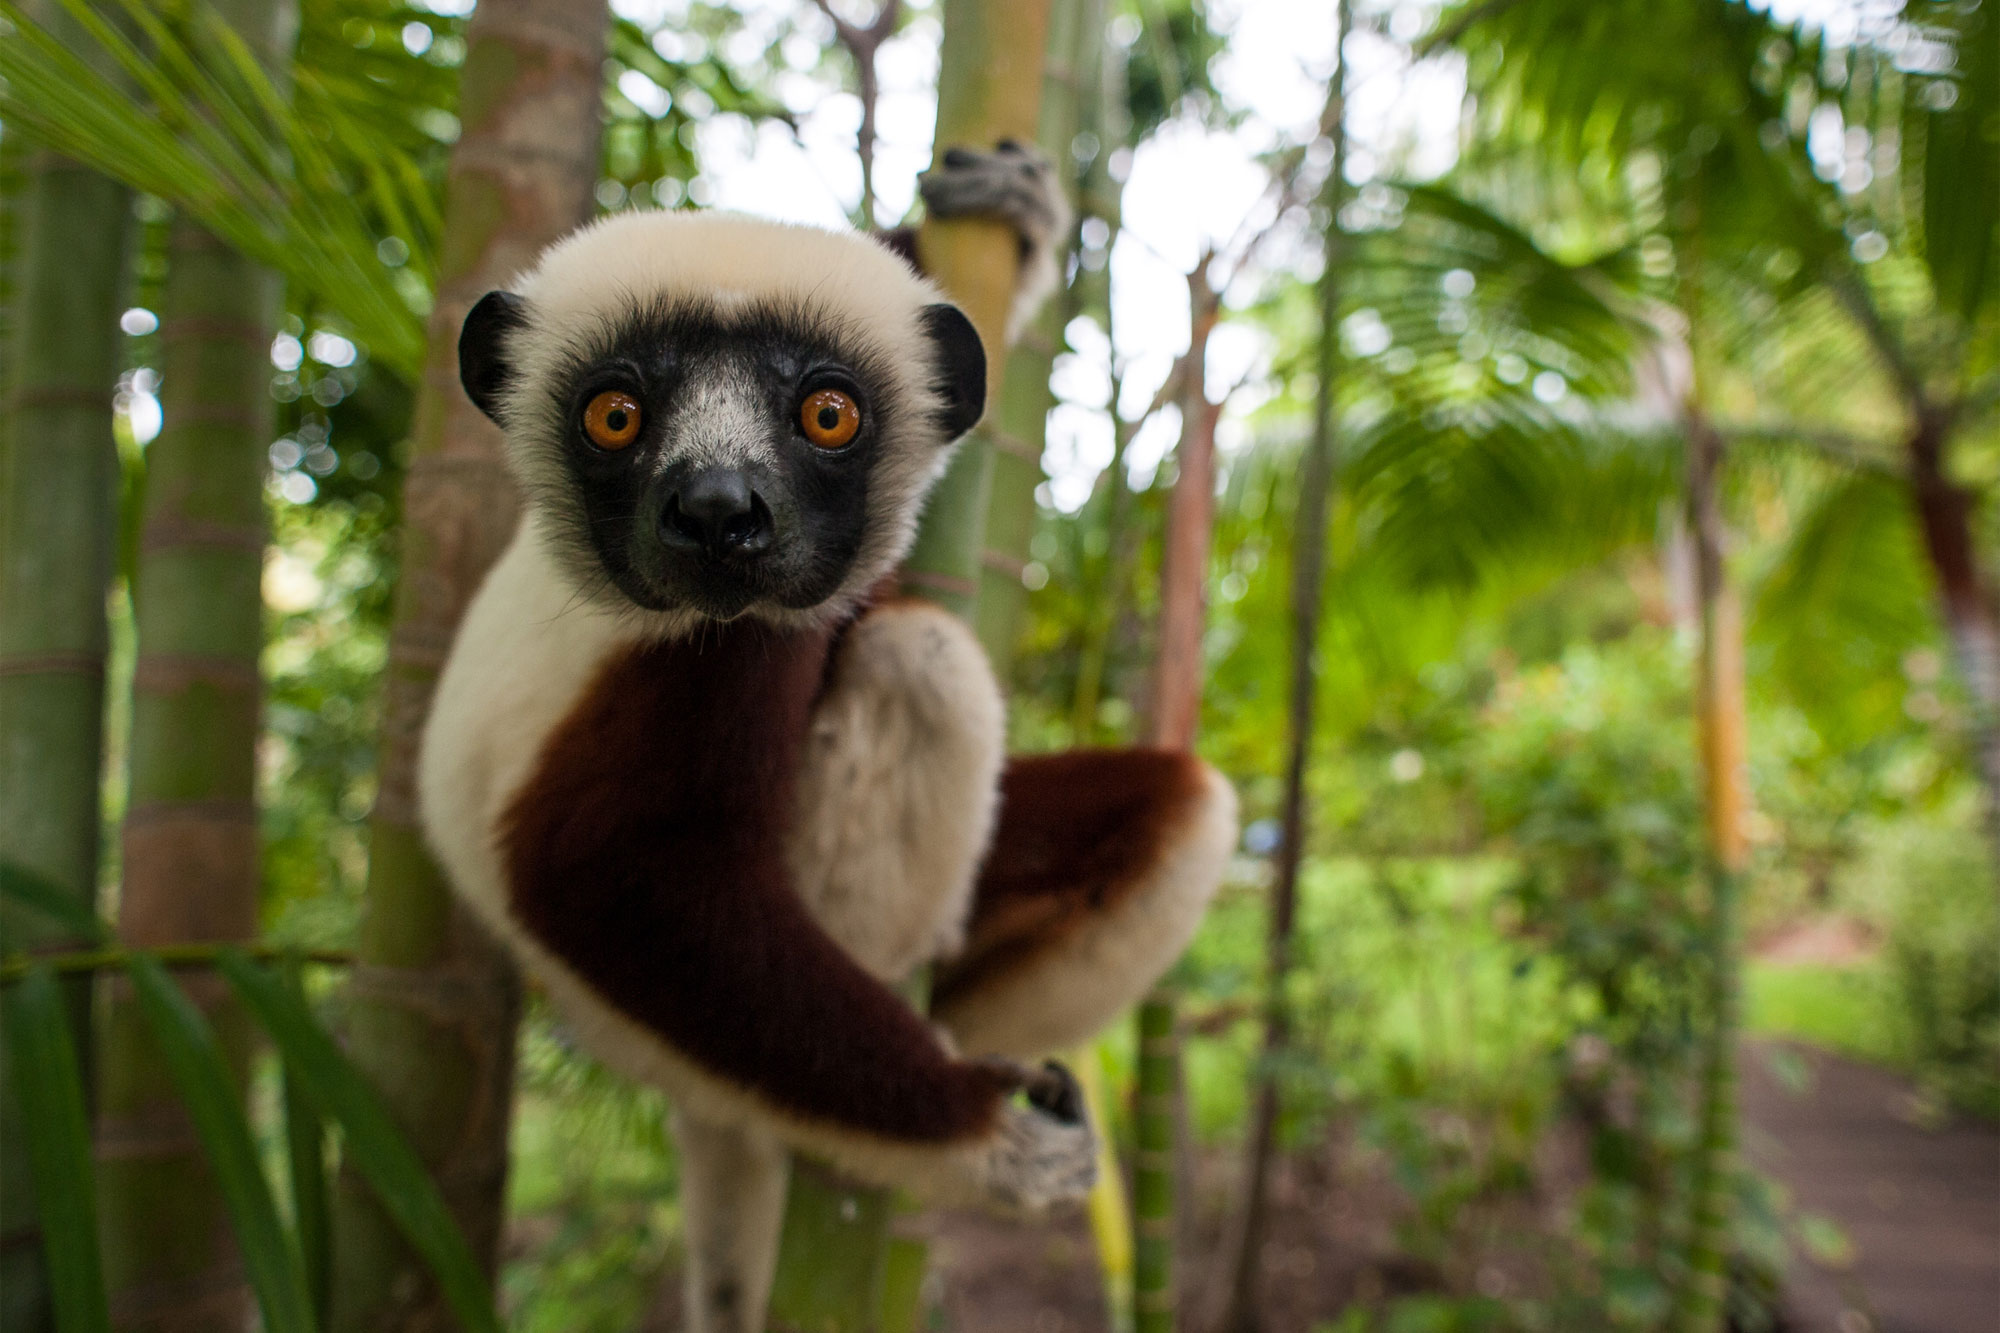 Lemur looking at camera in natural habitat